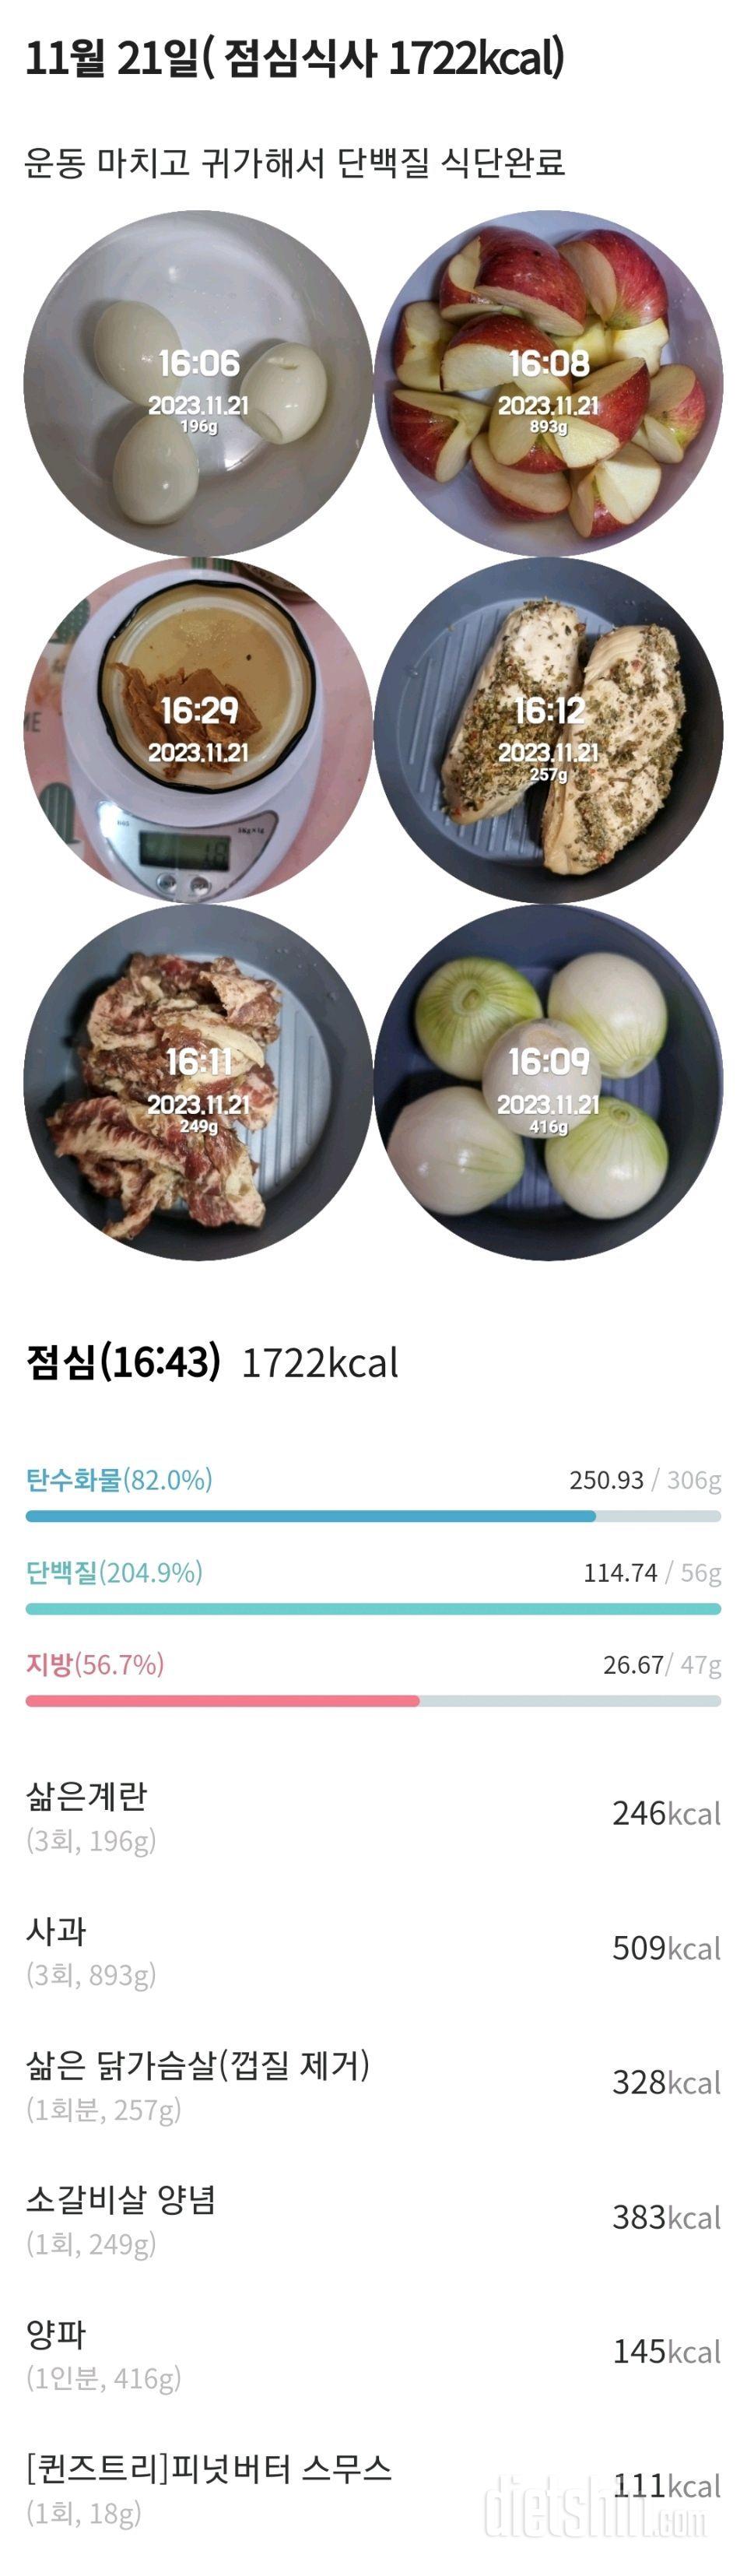 [다신22기]  21일차 공복체중+눈바디+식단+오운완